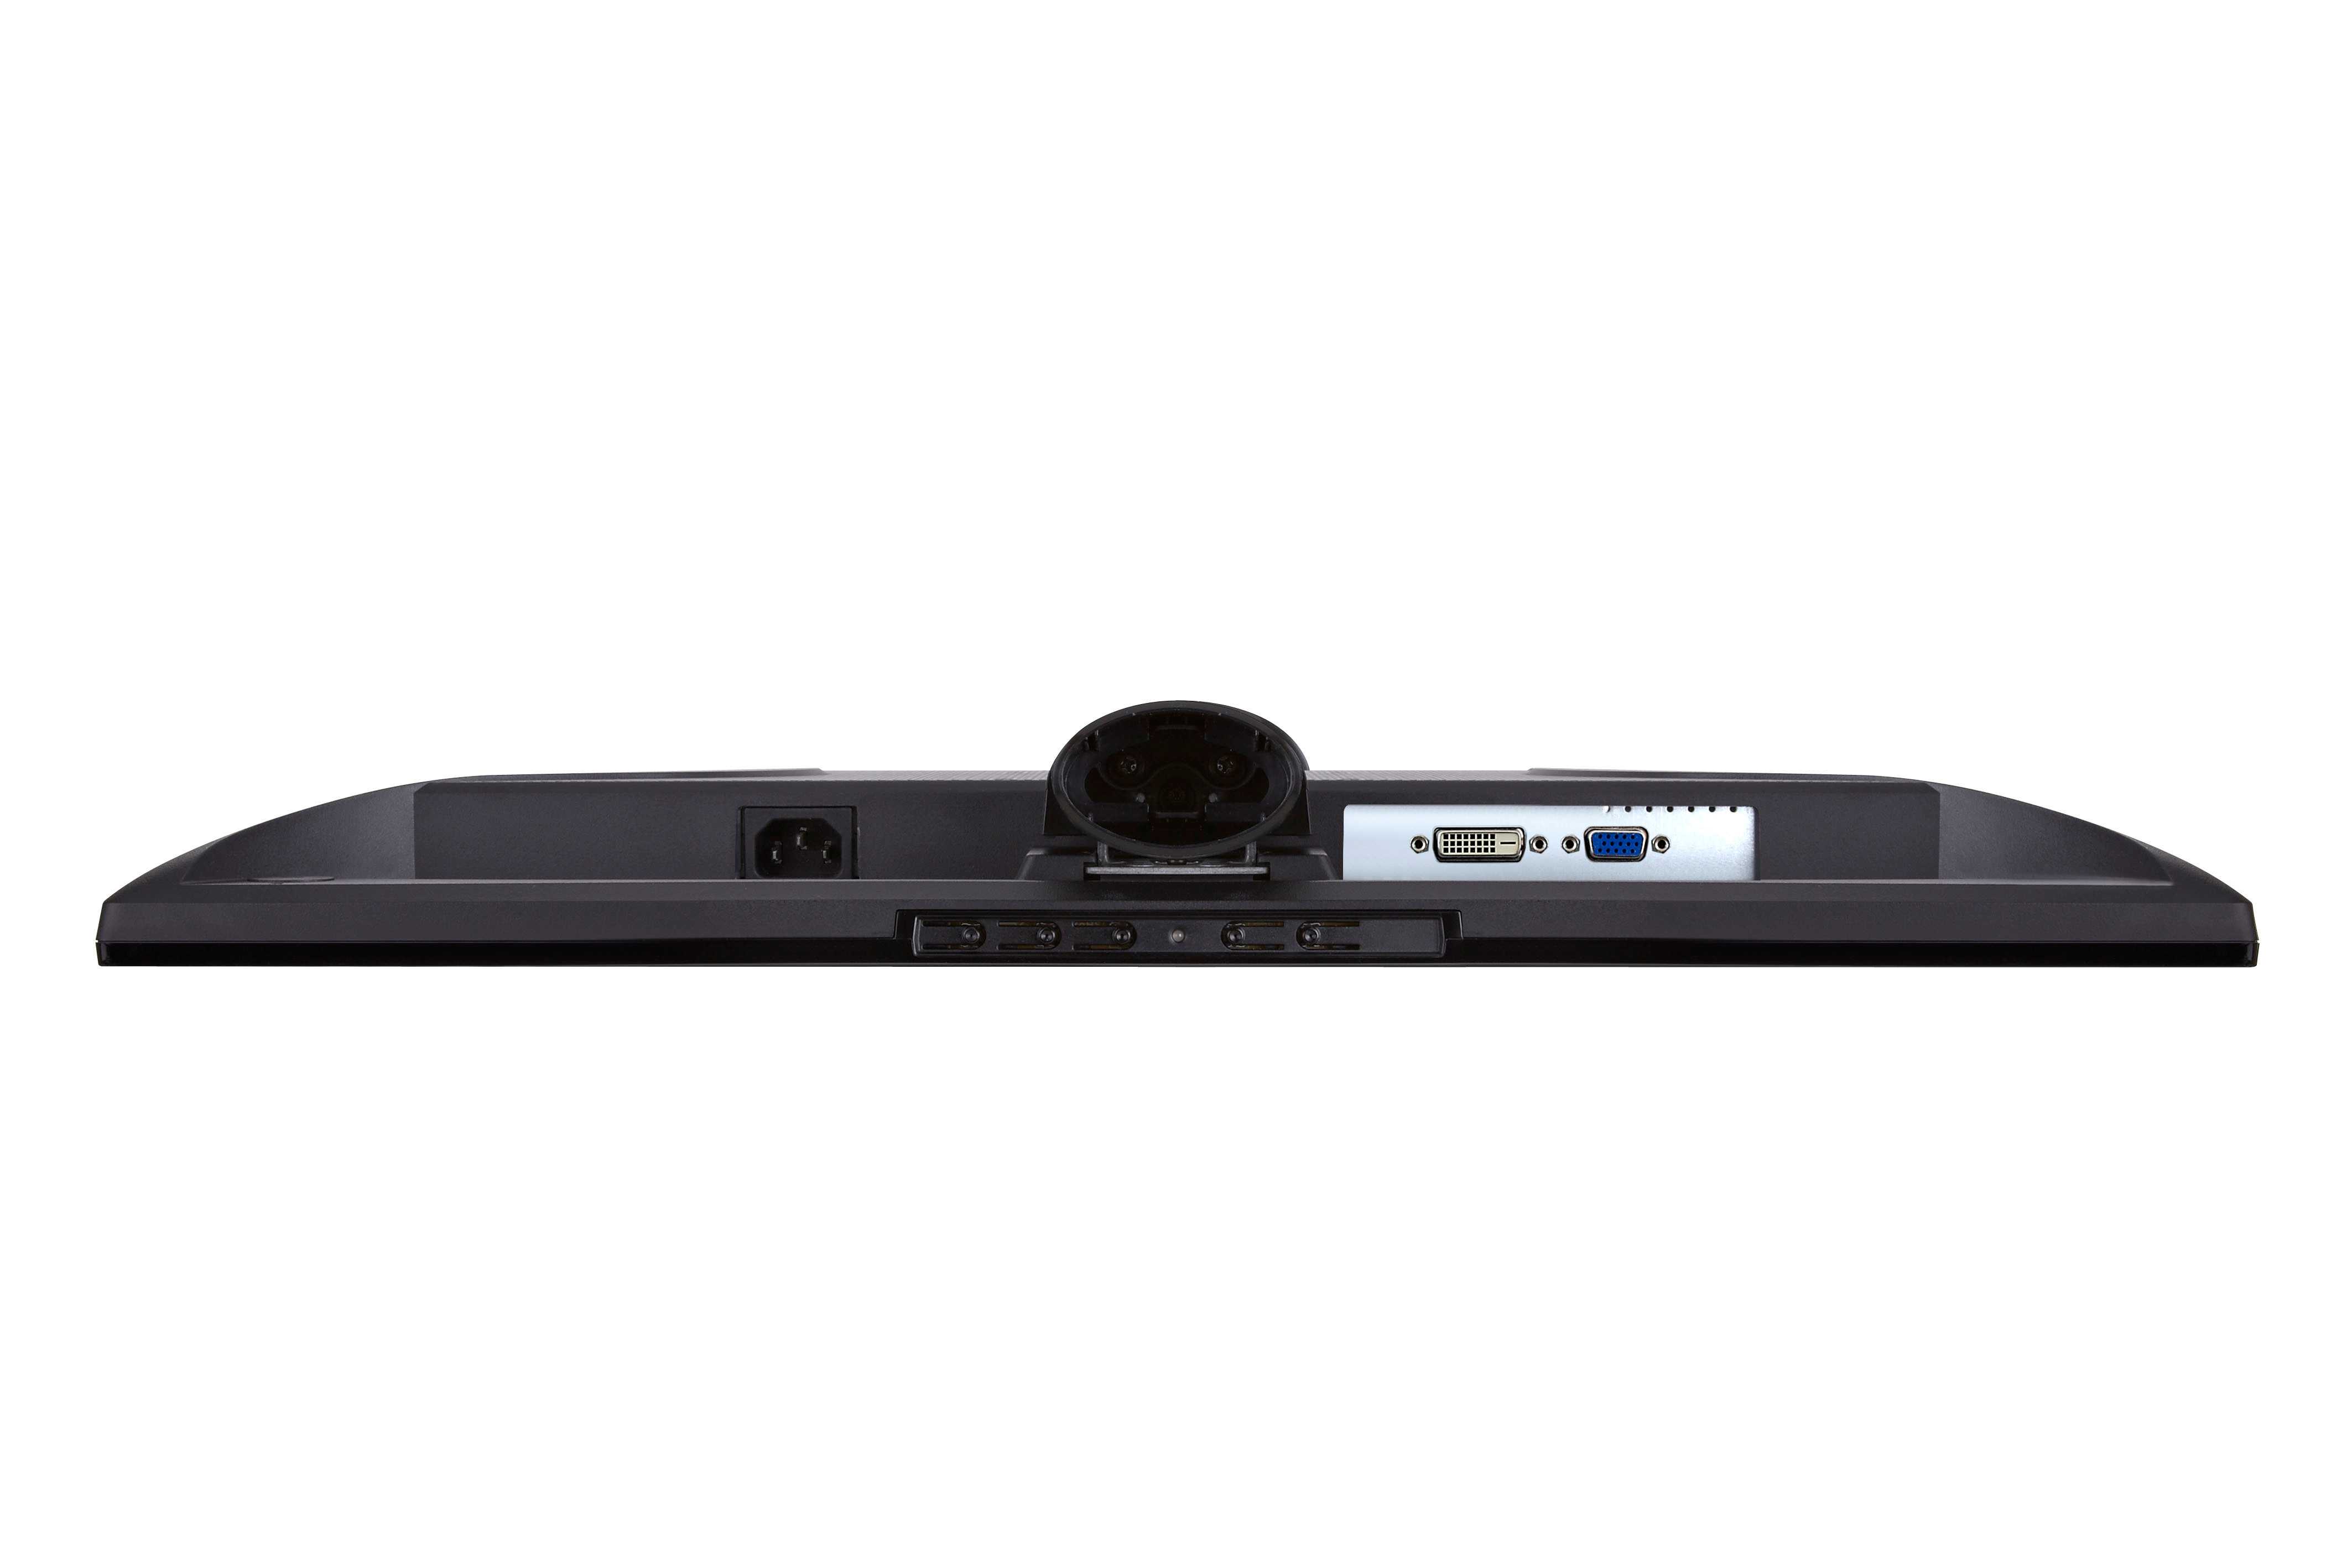 Viewsonic va2445-led (черный) - купить , скидки, цена, отзывы, обзор, характеристики - мониторы